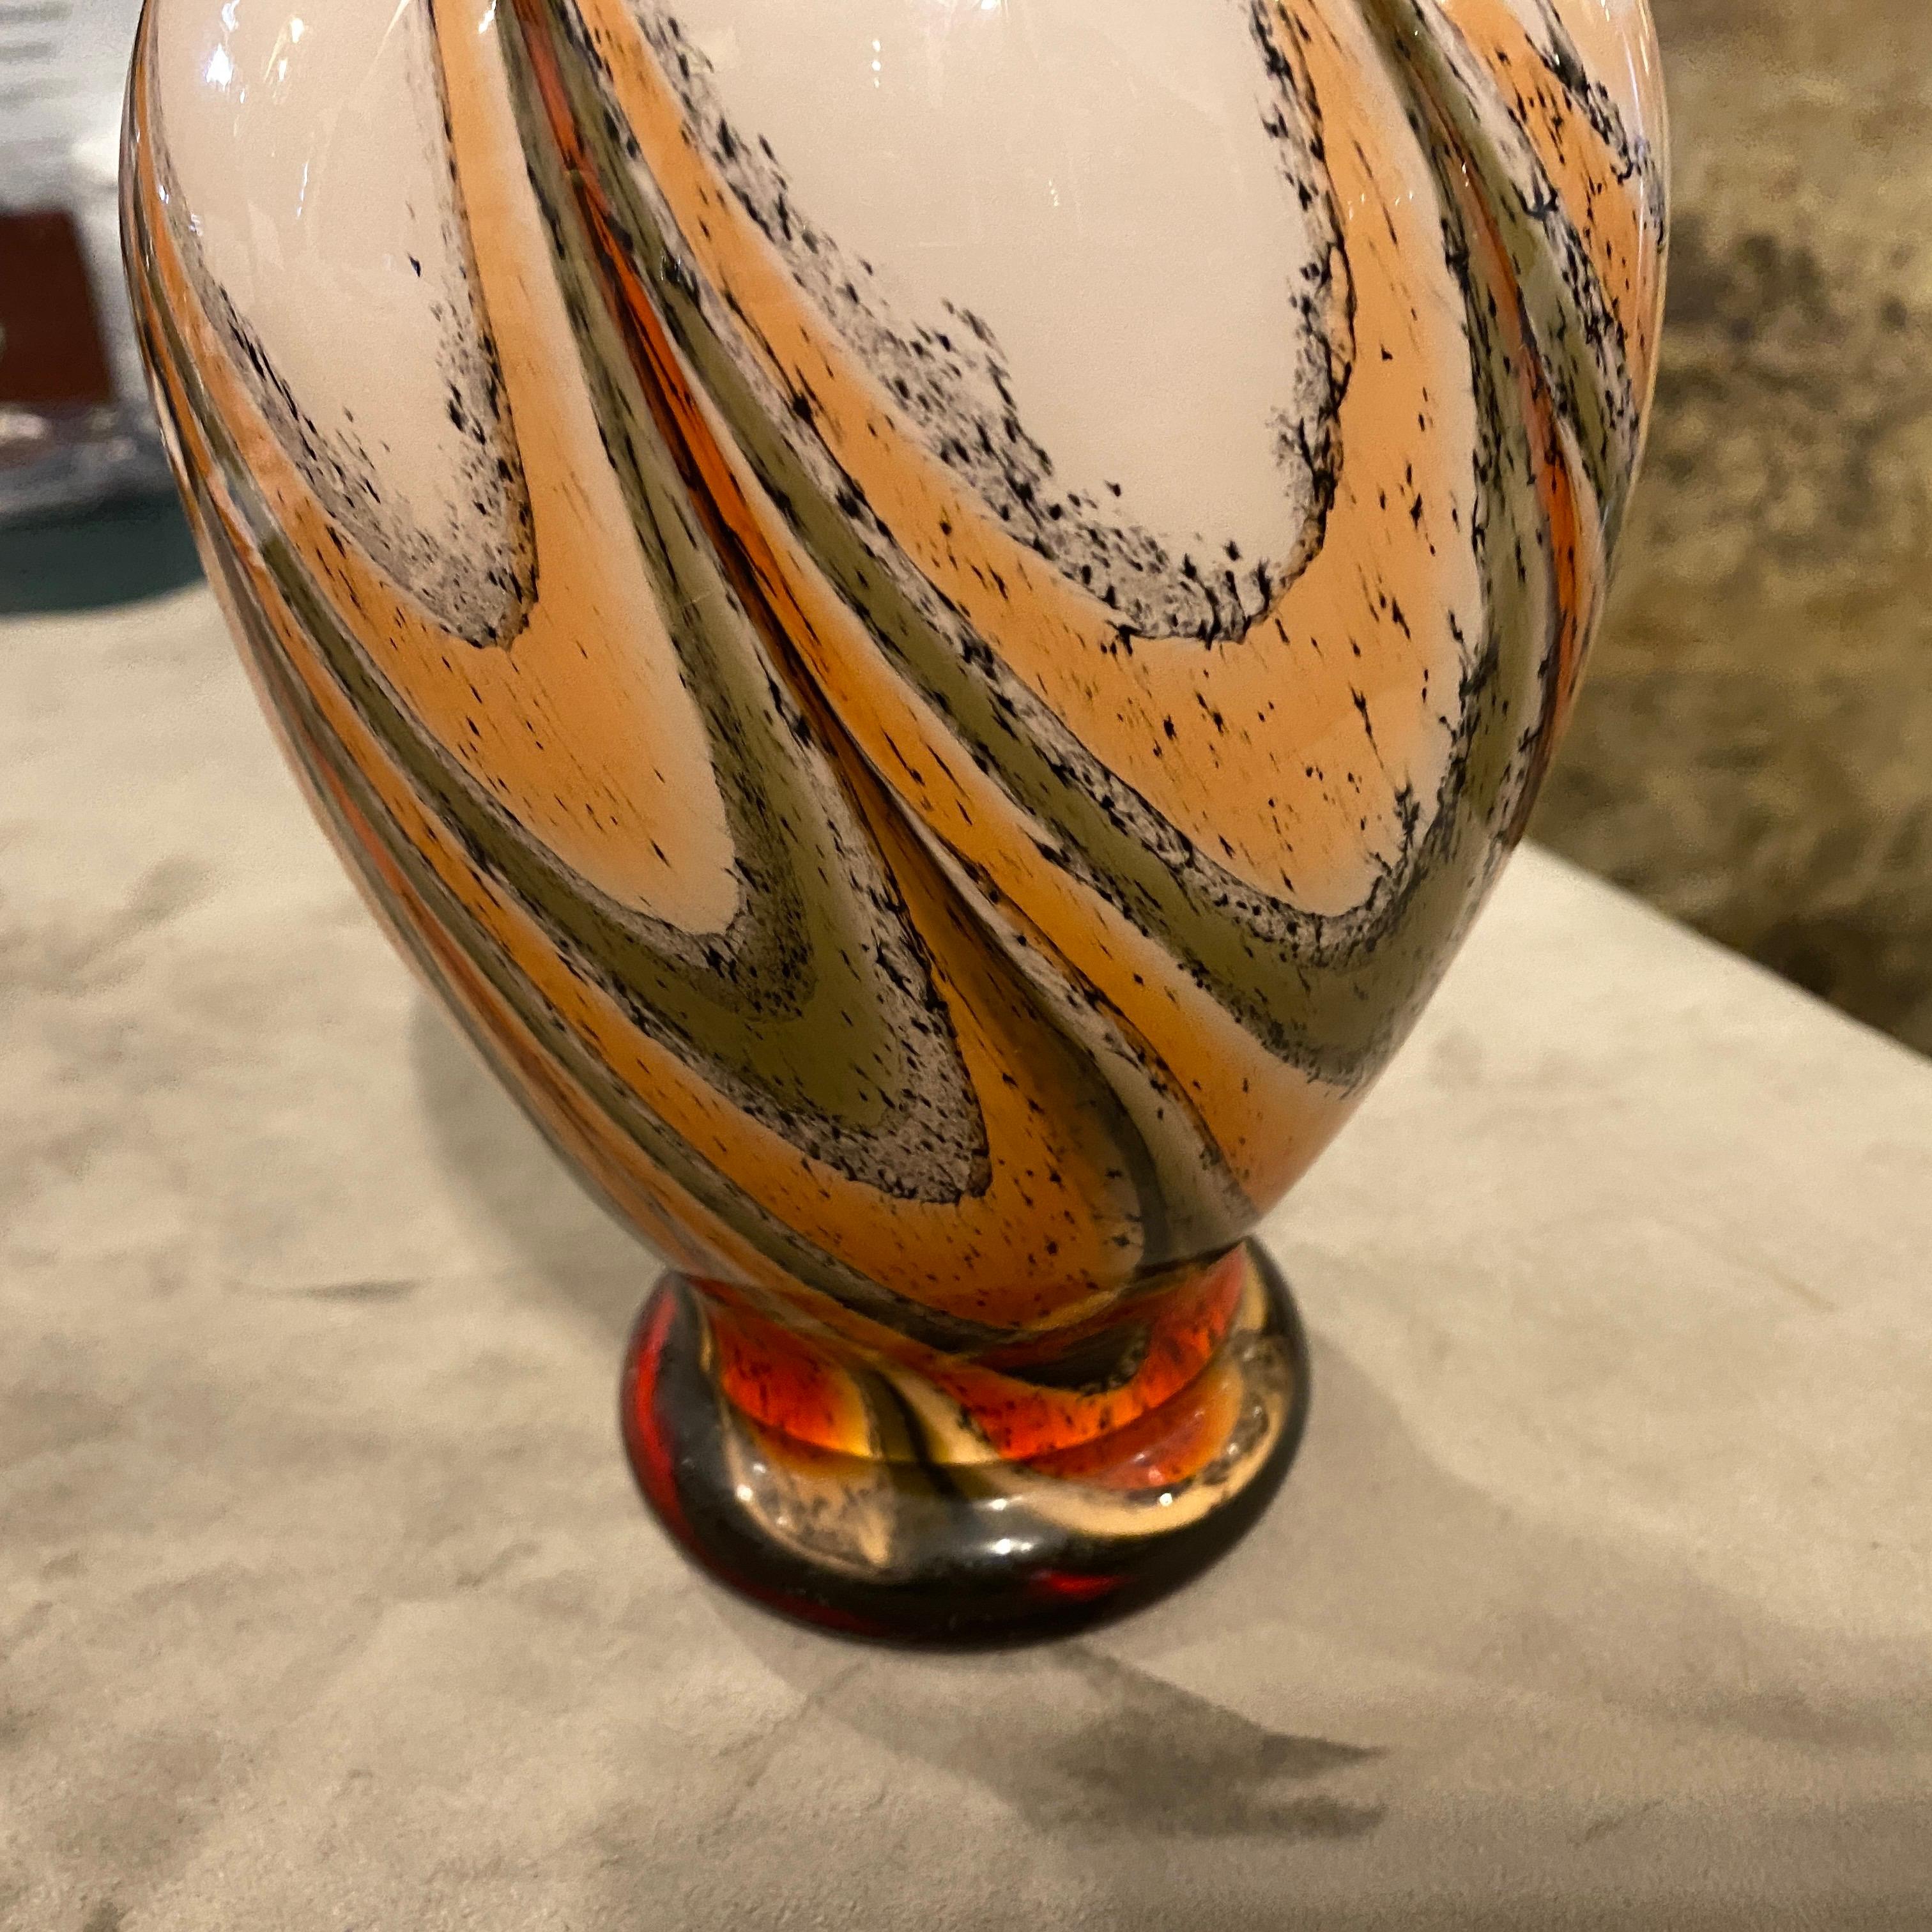 Un vase en verre opalin orange et brun fabriqué en Italie dans les années 70. Ces vases sont très populaires à cette époque. Elle a été entièrement soufflée et fabriquée à la main et chacun de ces vases peut être considéré comme une pièce unique.